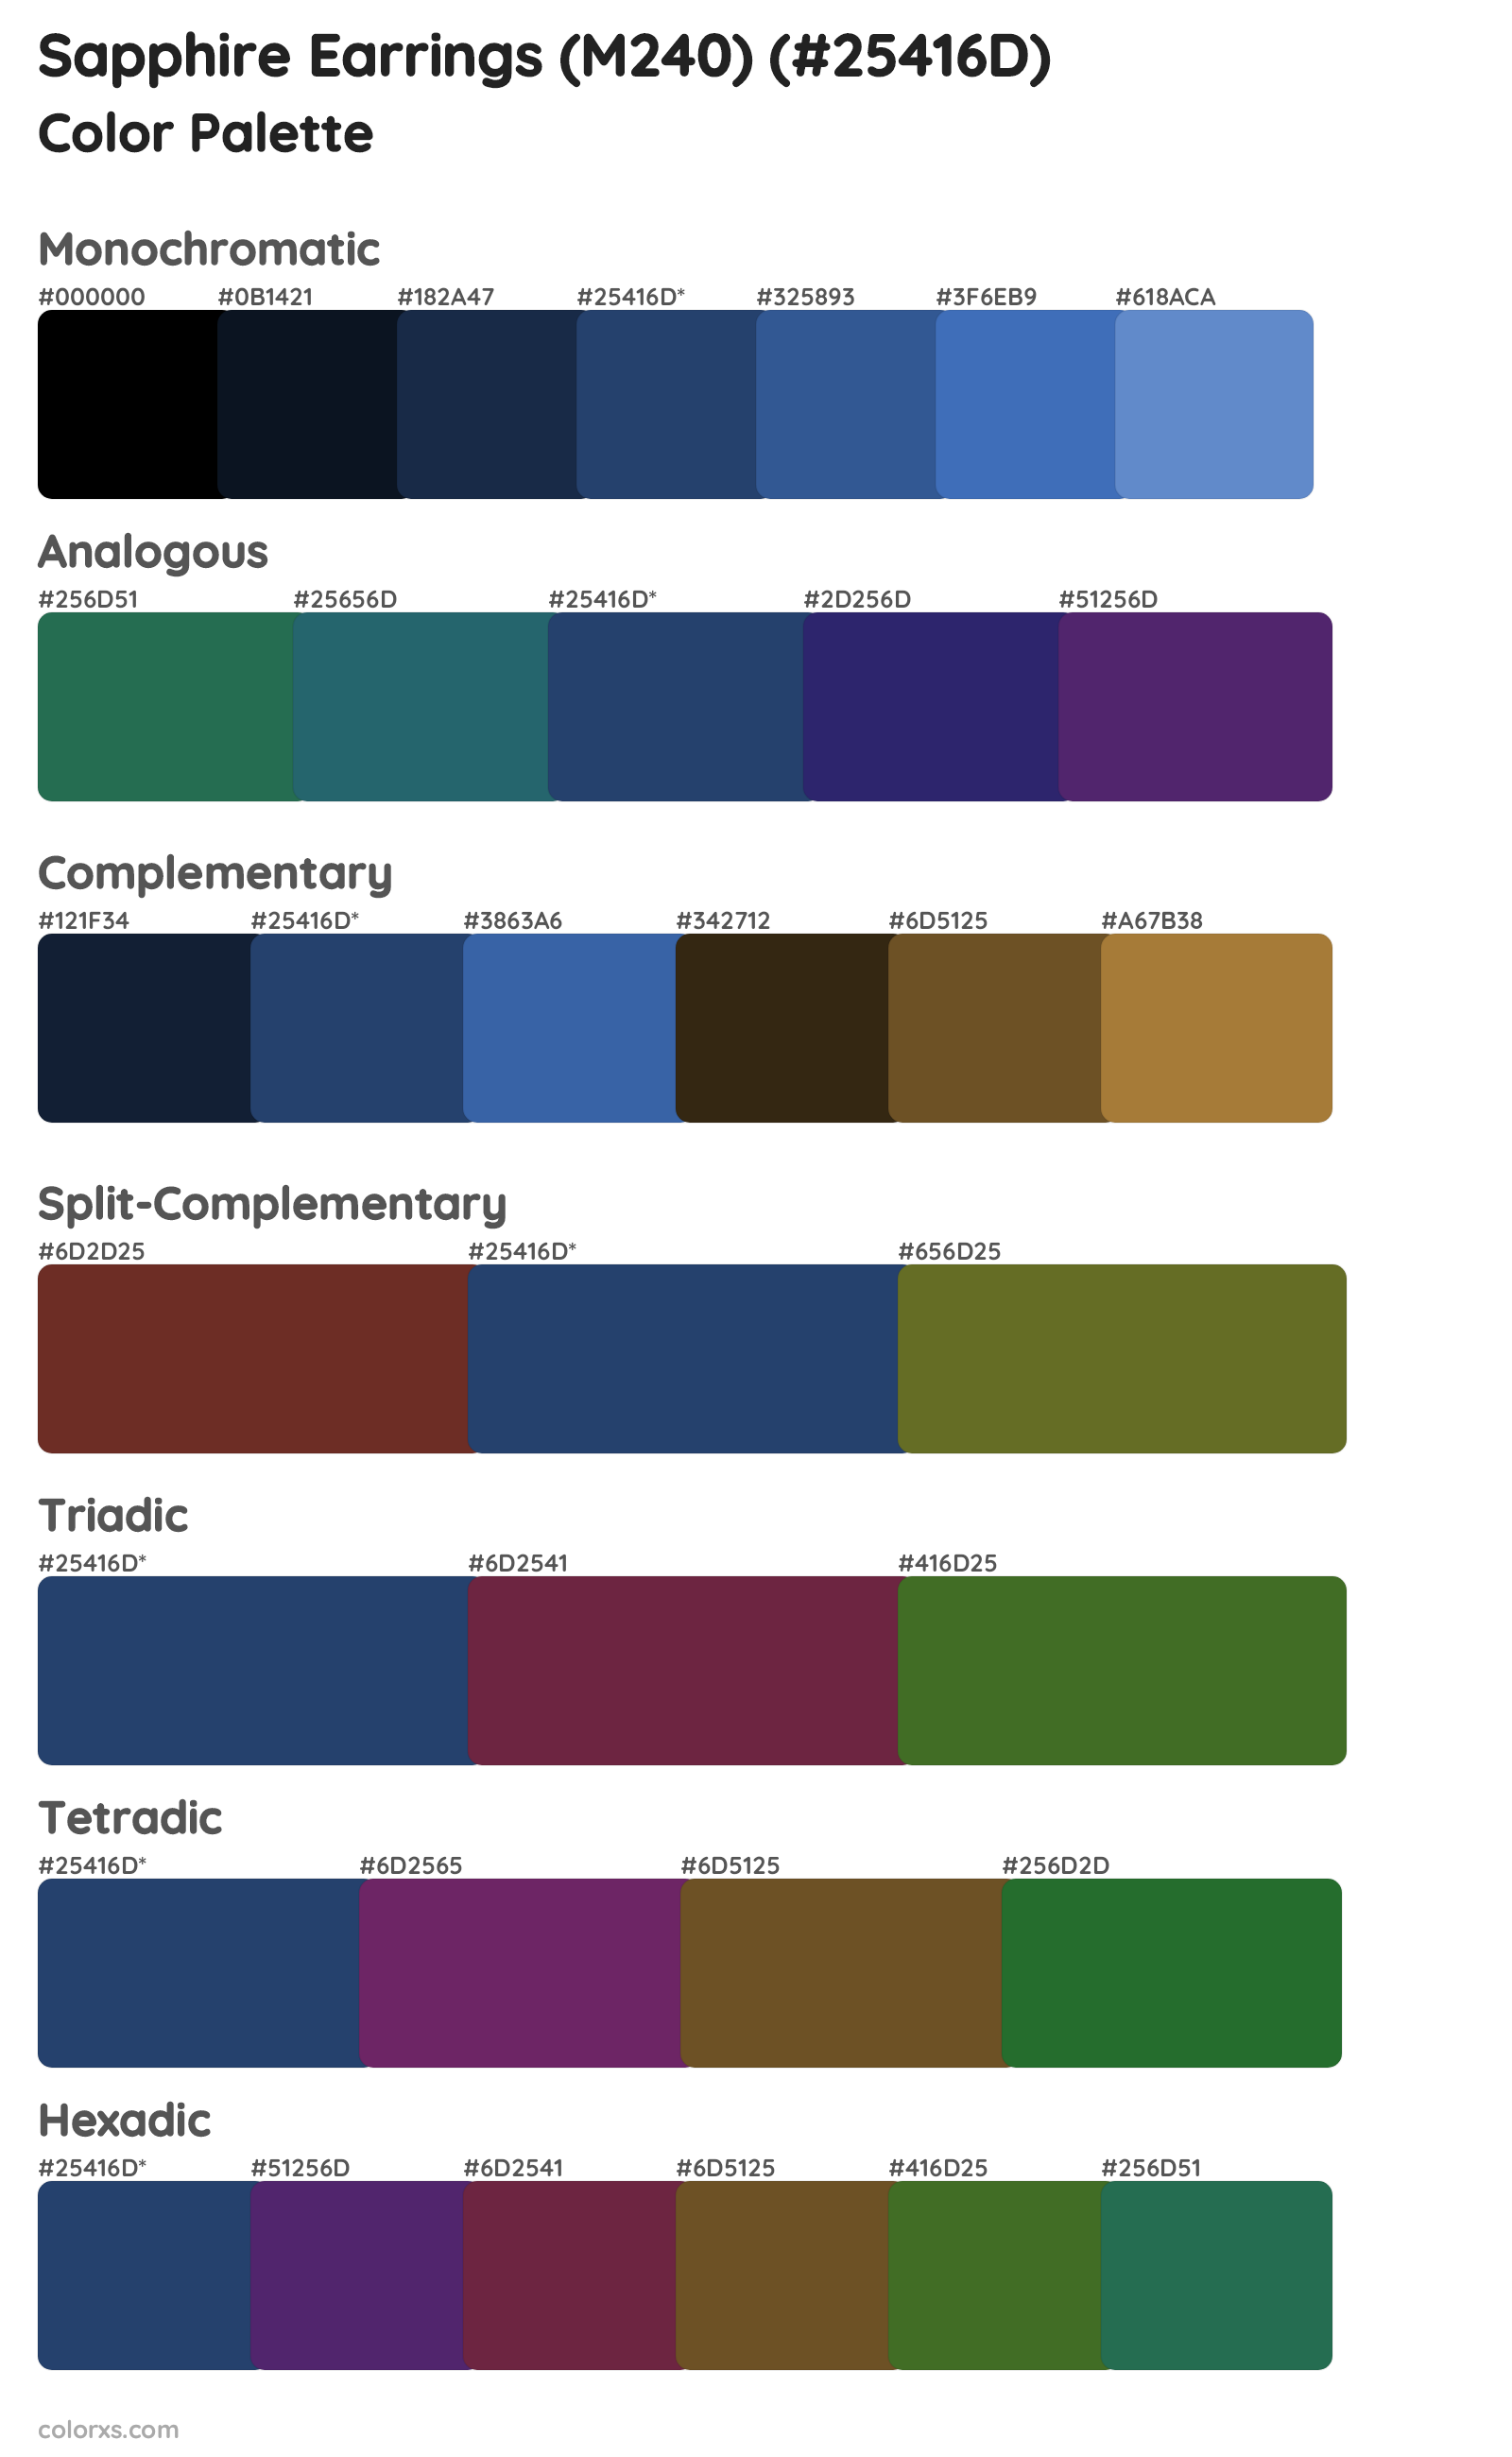 Sapphire Earrings (M240) Color Scheme Palettes